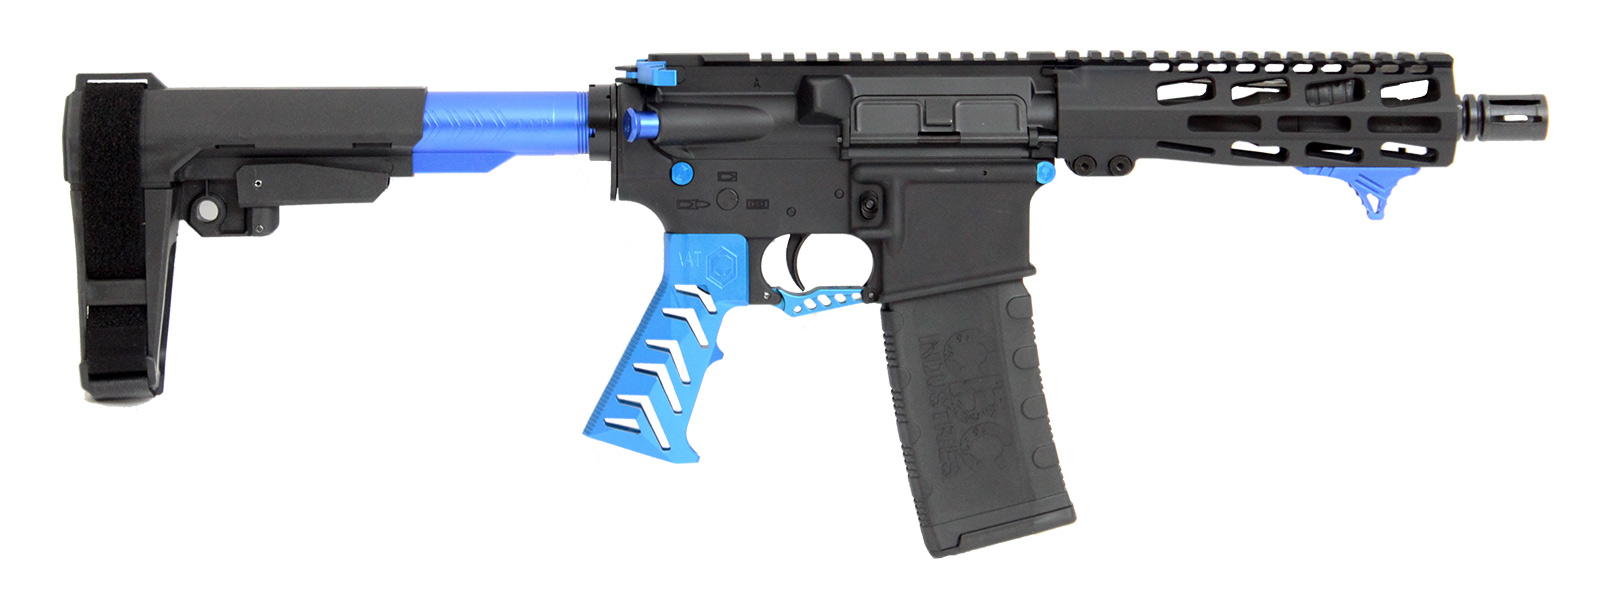 cbc-ps2-forged-aluminum-ar-pistol-alien-blue-223-wylde-7-5″-barrel-m-lok-rail-sba3-brace